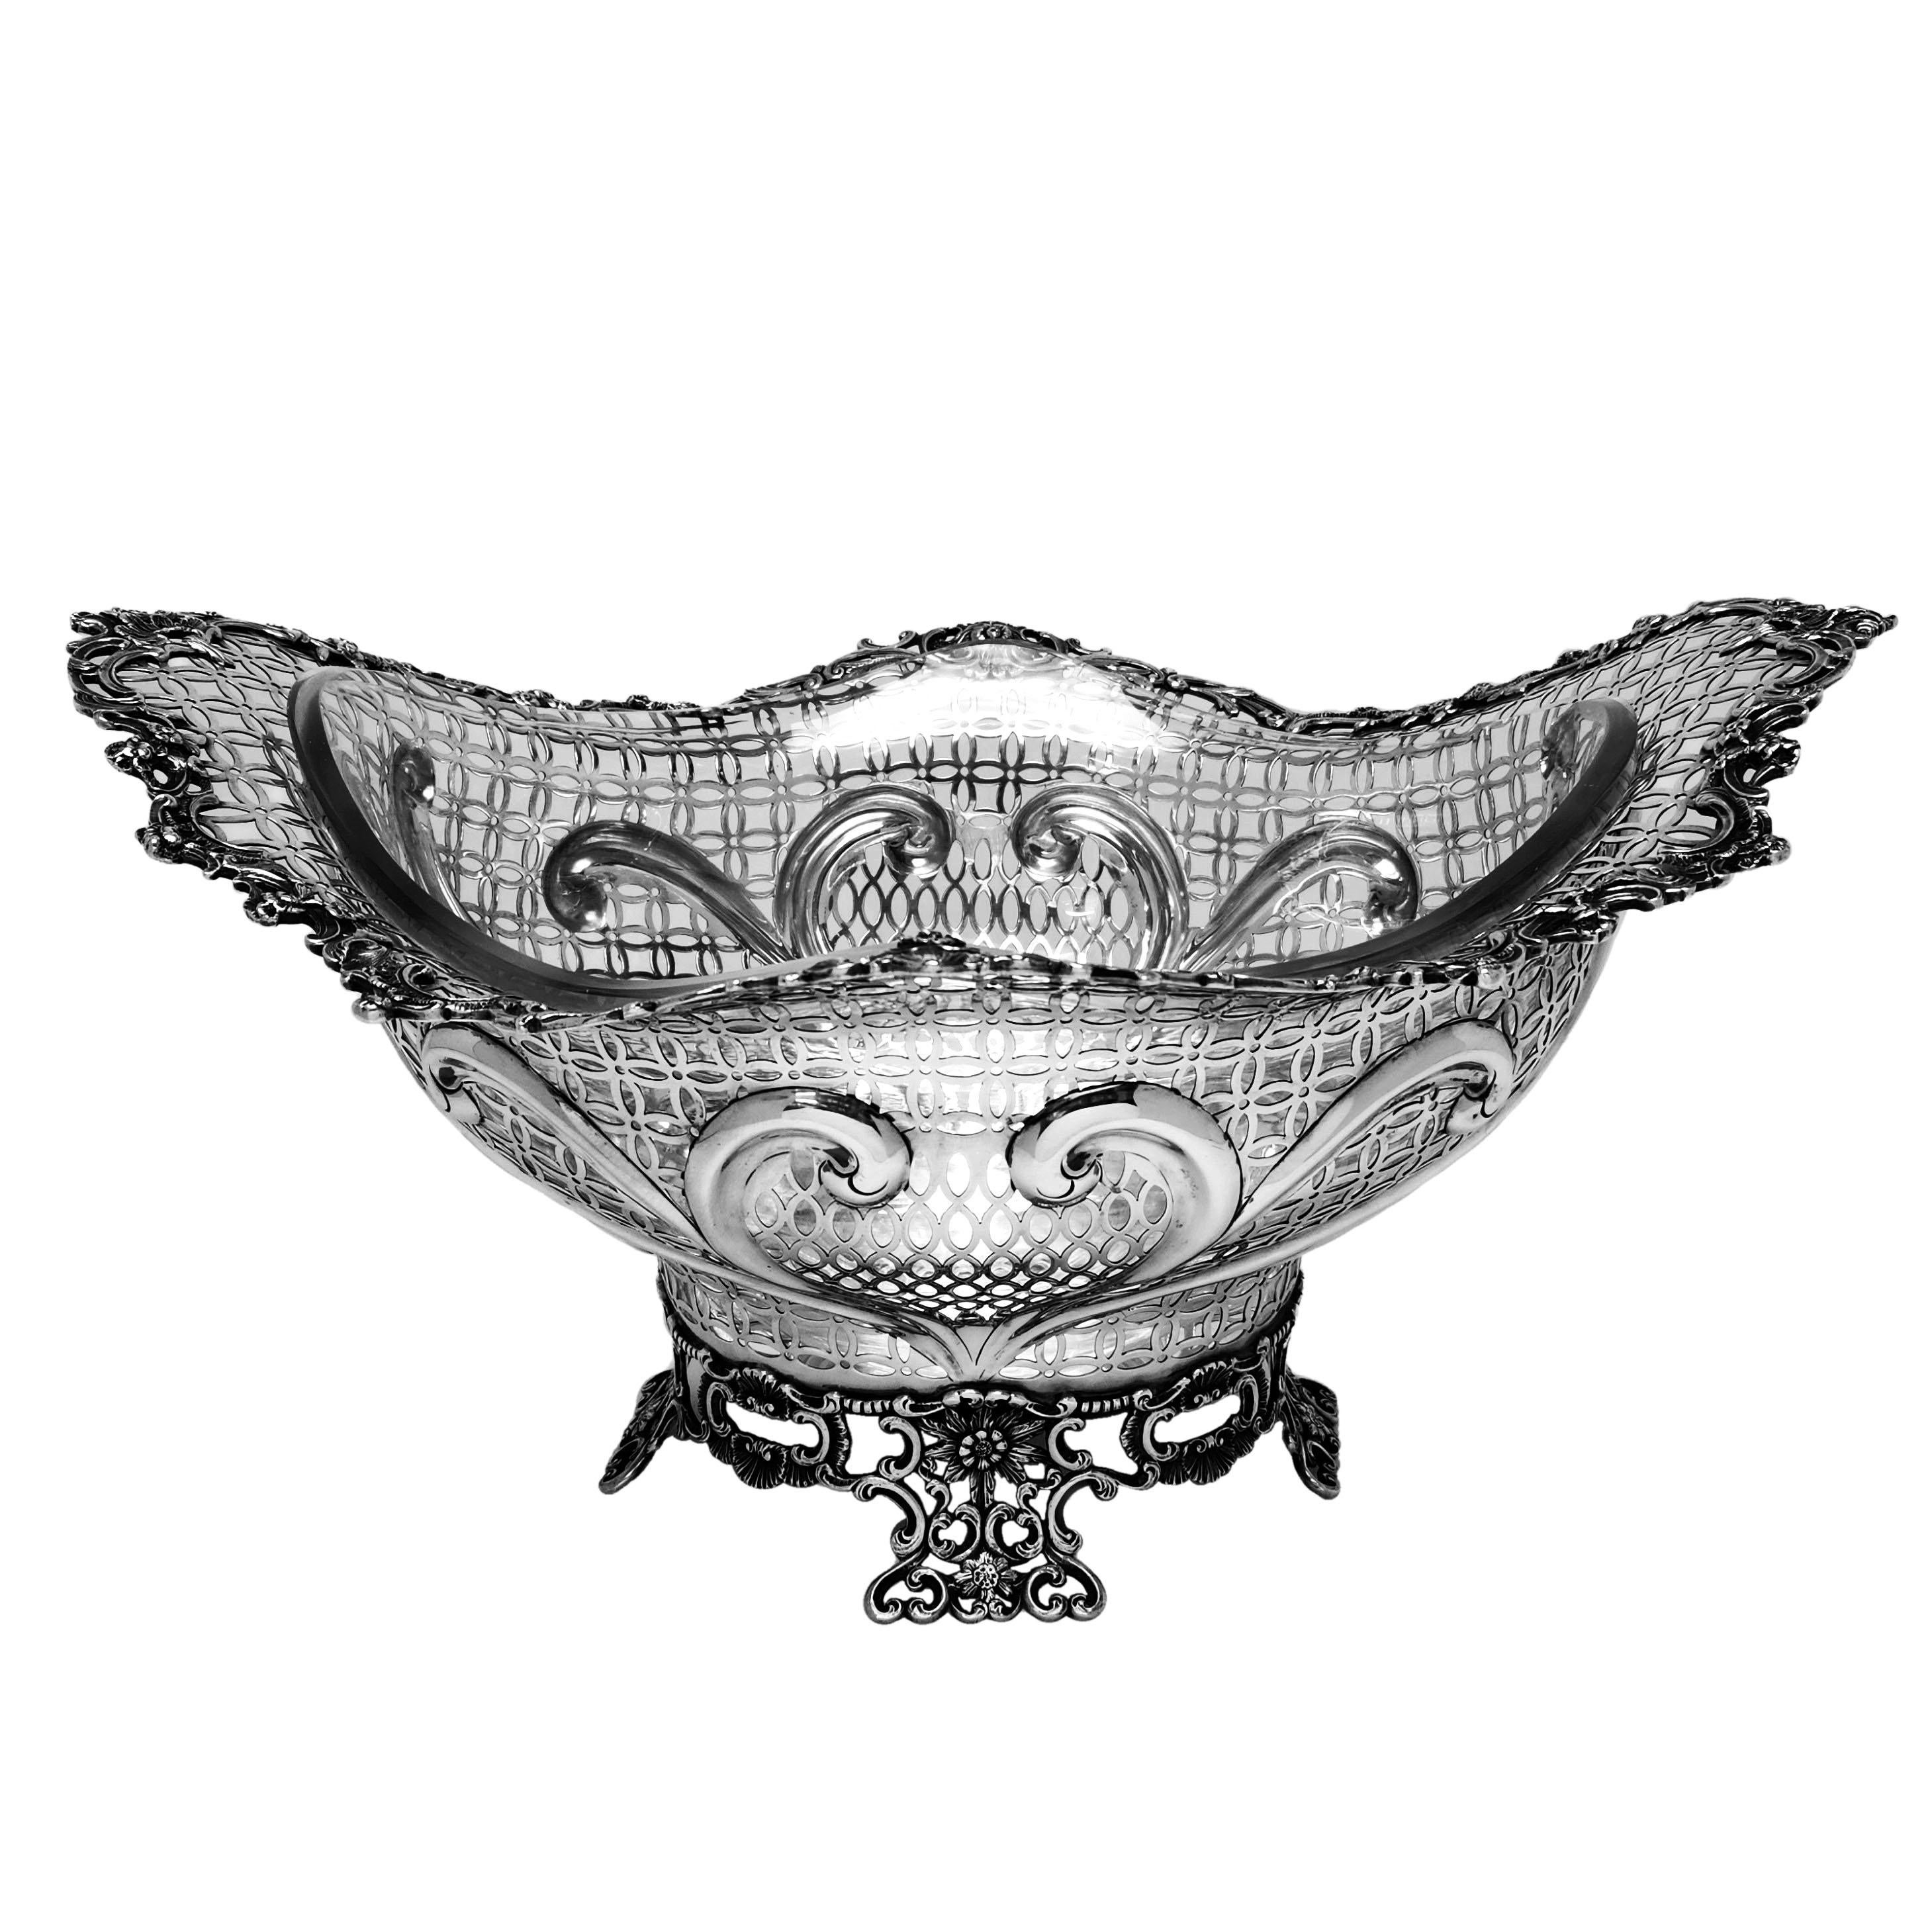 Un magnifique panier en argent massif de style victorien antique avec une doublure en verre transparent. Ce panier est de taille importante et présente des motifs complexes percés et ciselés. Le bord et le pied de la coupe présentent un motif floral